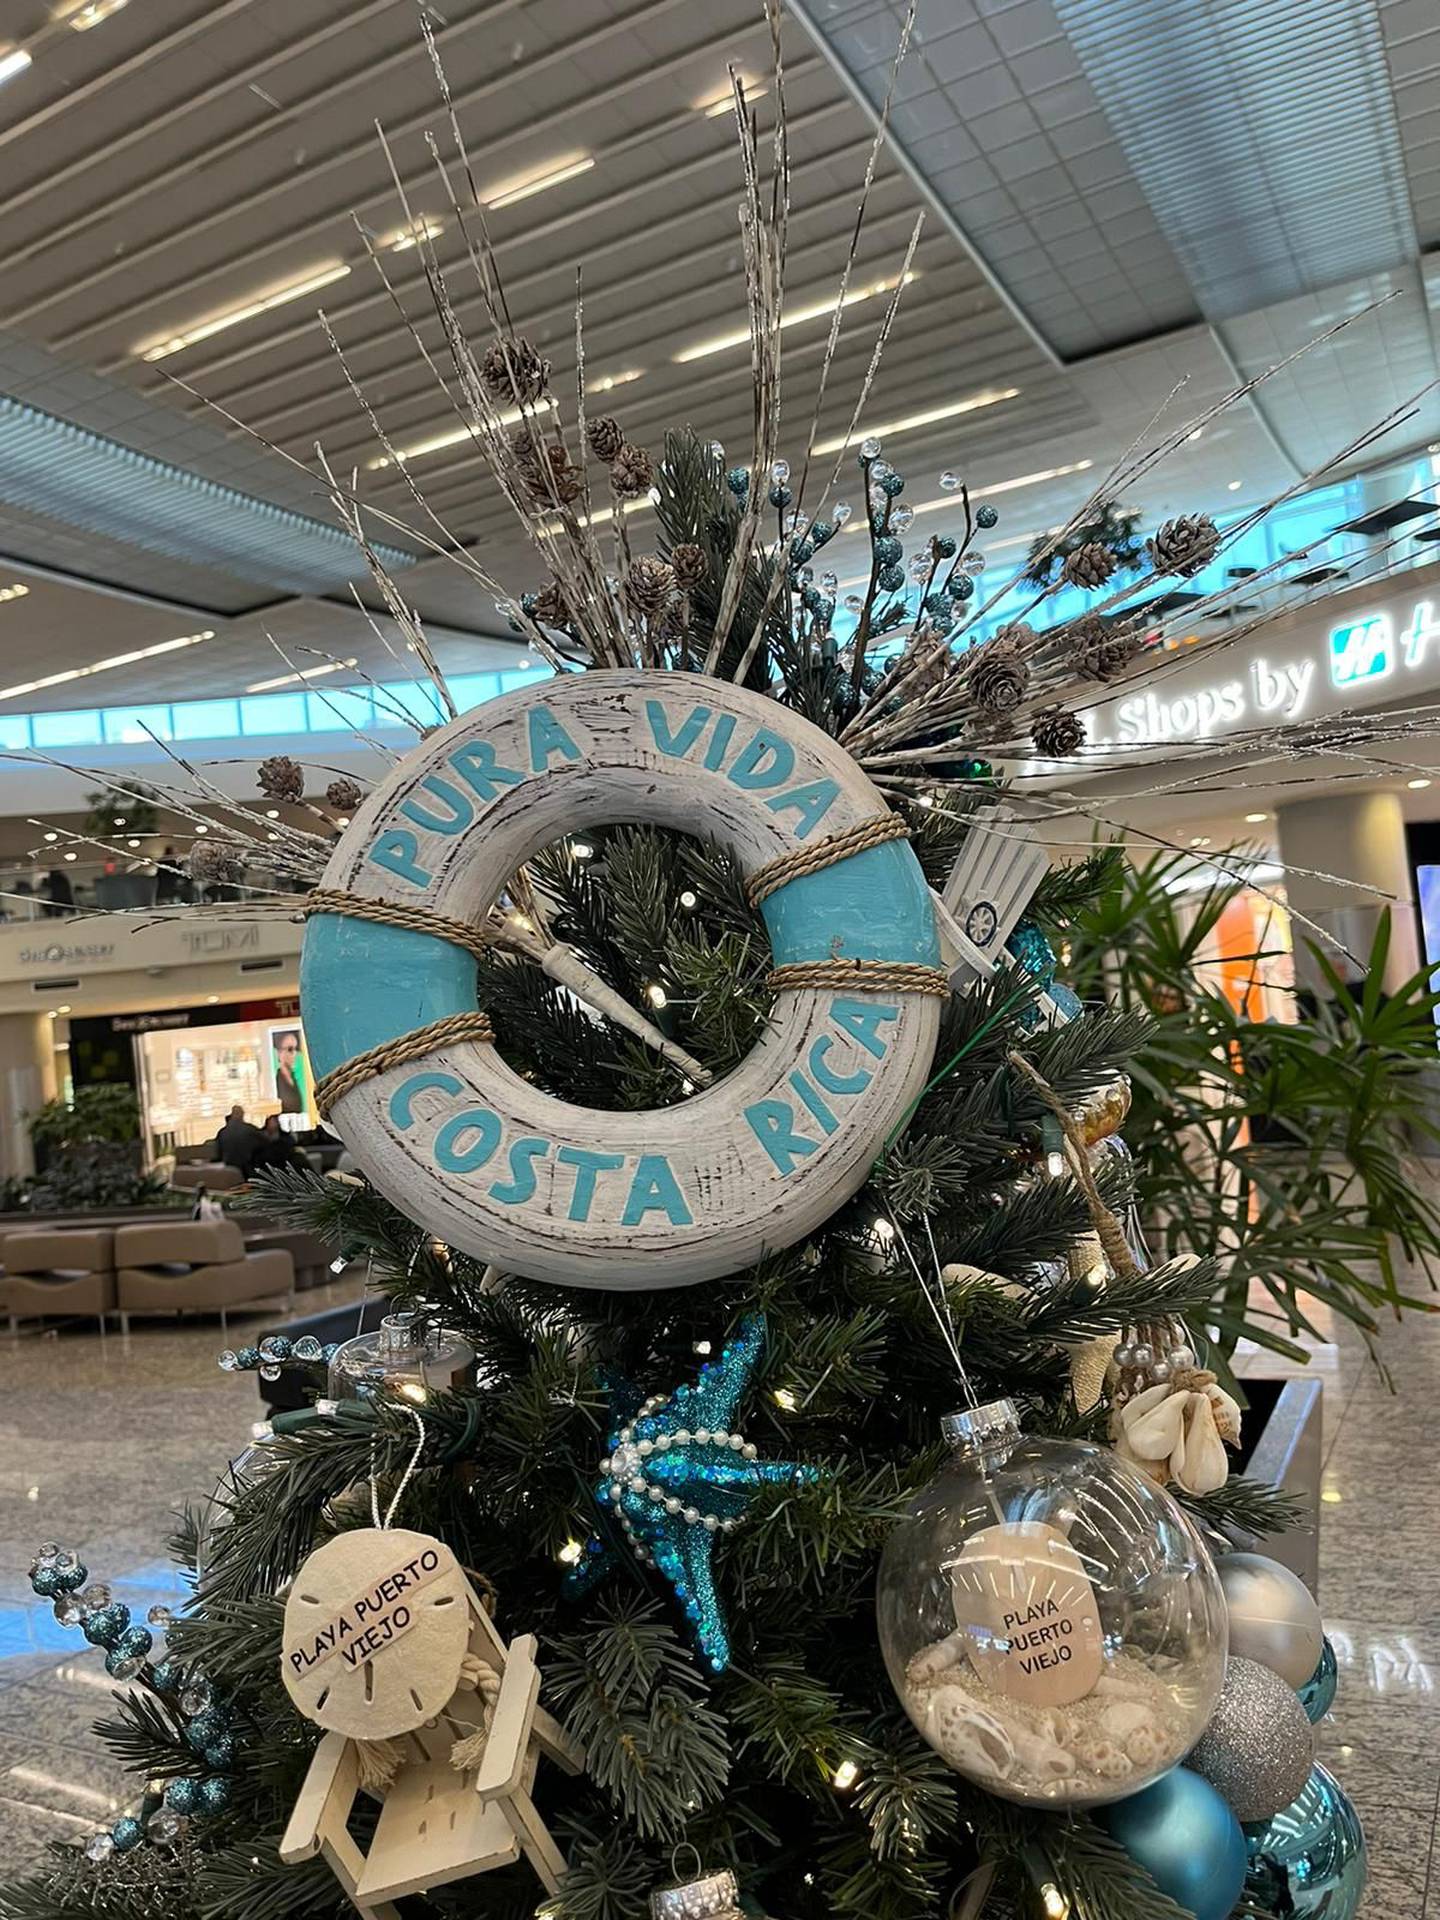 Desde hace dos semanas el aeropuerto internacional Hartsfield-Jackson en Atlanta, Estados Unidos, tiene un pedacito de Costa Rica muy navideño, muy representativo de nuestras playas y del pura vida, gracias a las manos de la costarricense María Chinchilla Obando